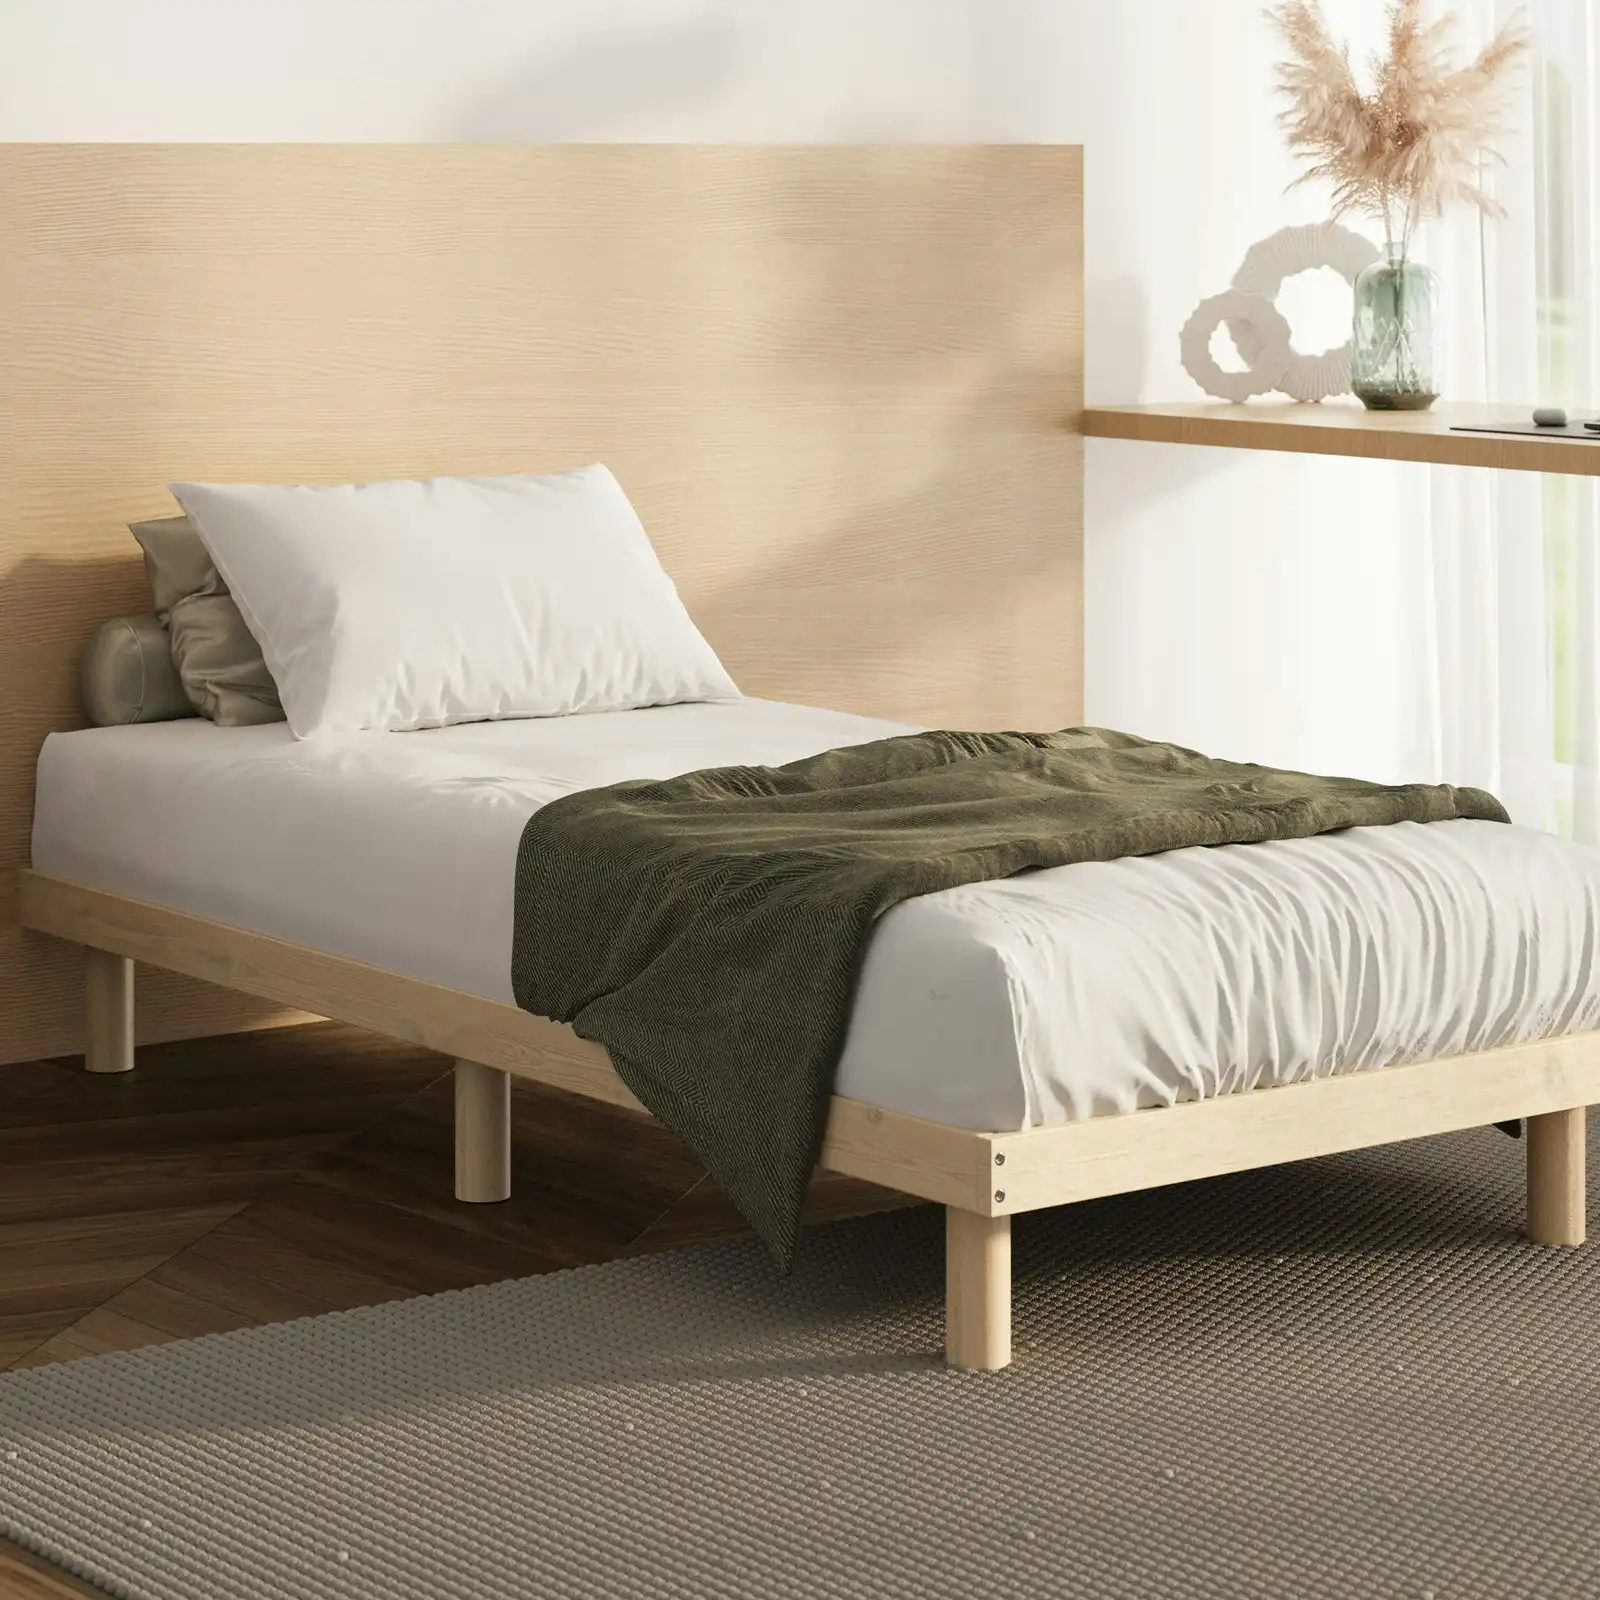 Oikiture Bed Frame Single Size Wooden Base Bed Platform